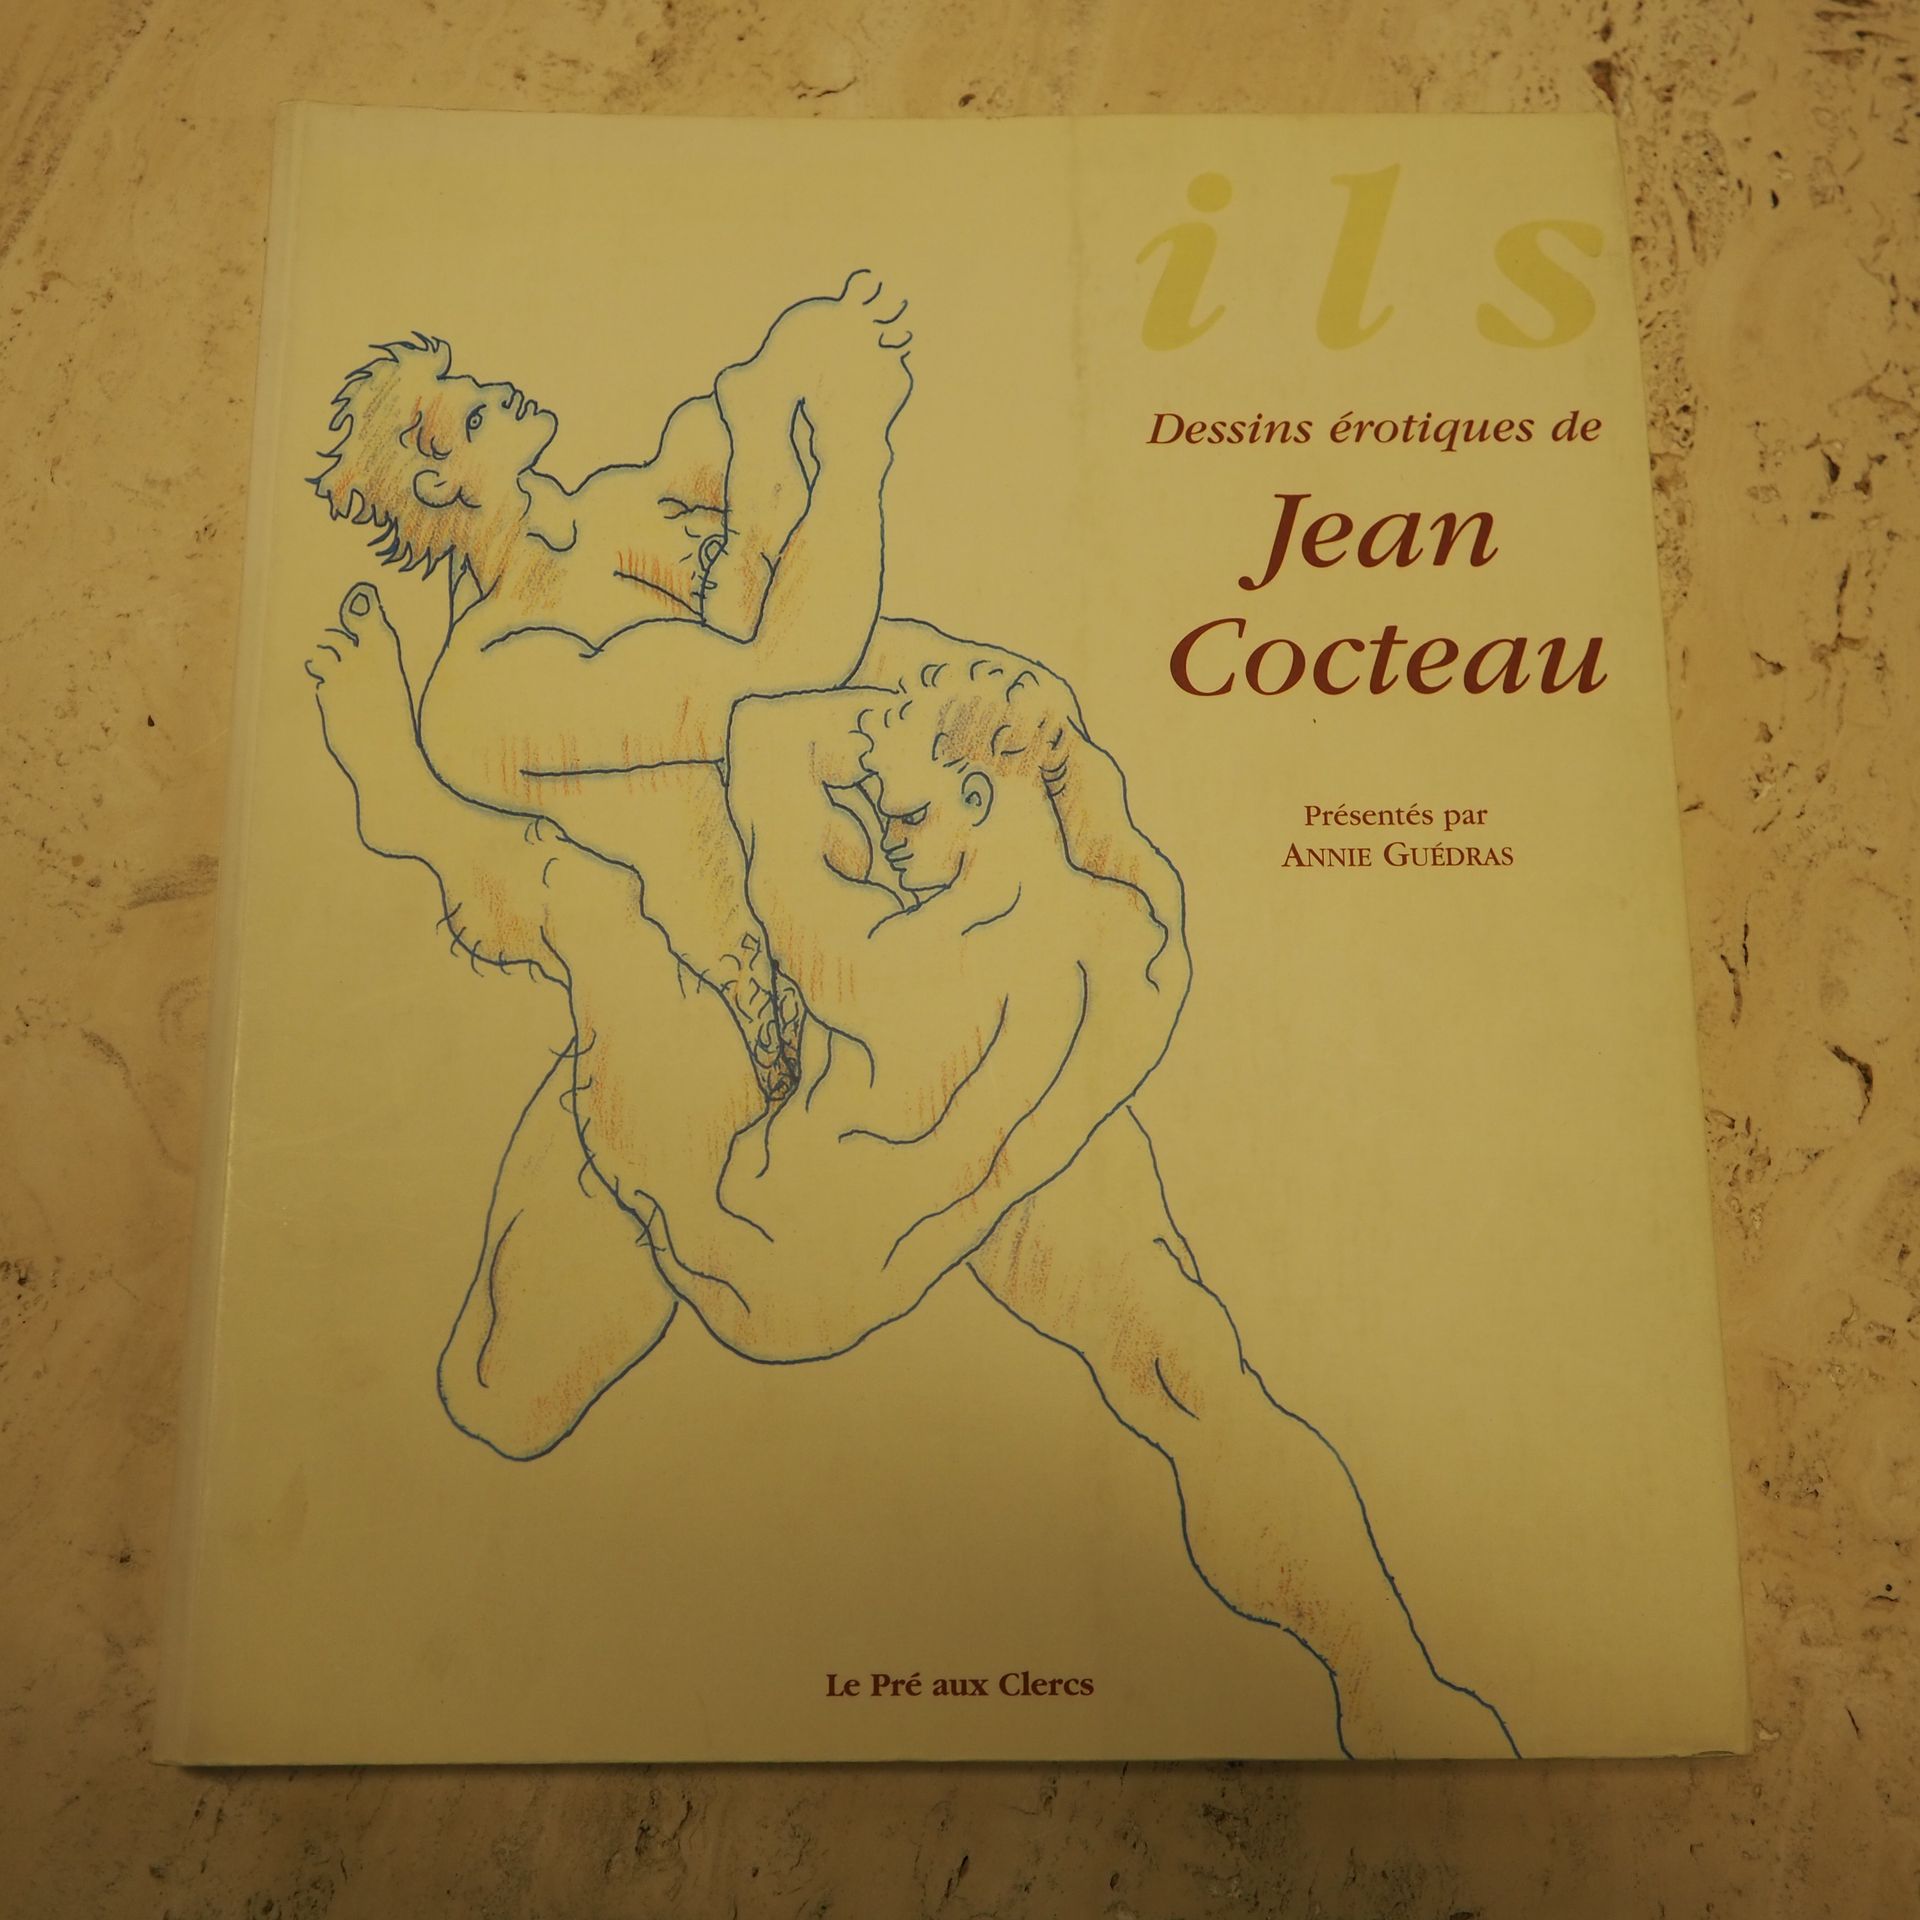 JEAN COCTEAU Jean Cocteau : Buch, erotische Zeichnungen, Annie Guédras